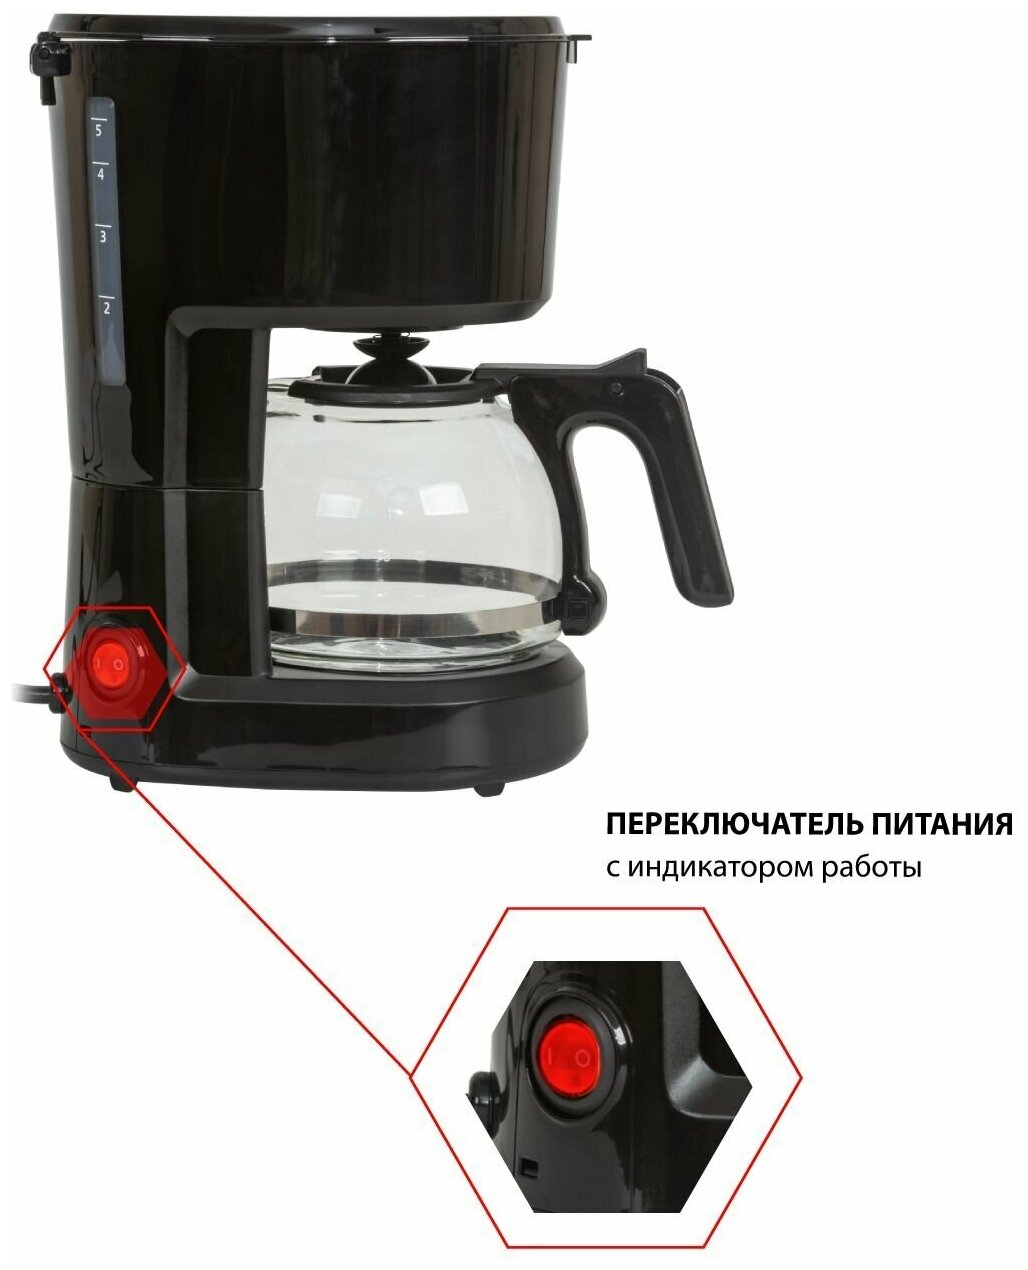 Кофеварка капельная JVC со съемным фильтром и резервуаром 600 мл, функция поддержания температуры, 600 Вт - фотография № 2